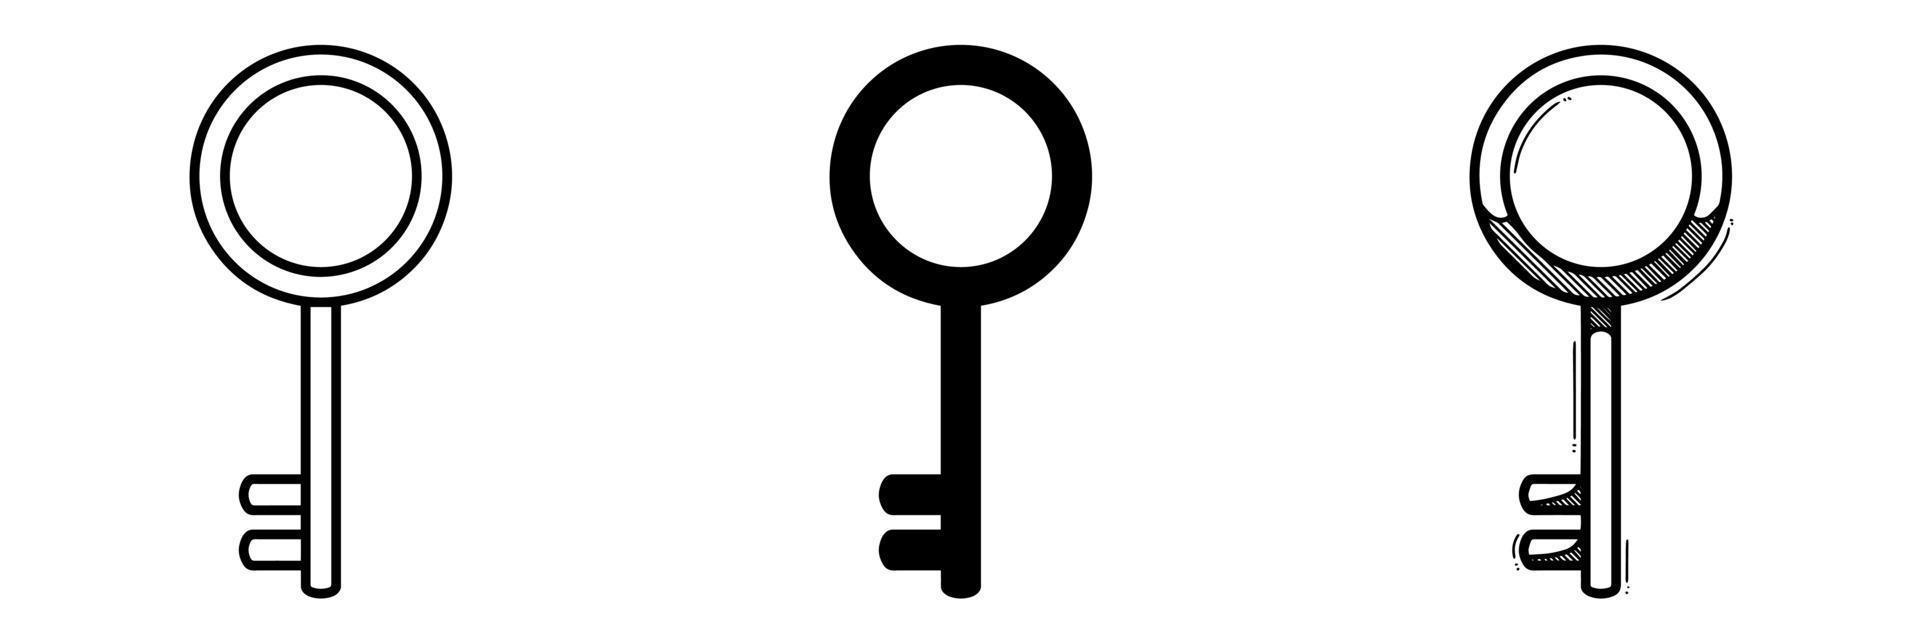 Vector illustration of key icon set isolated on white background